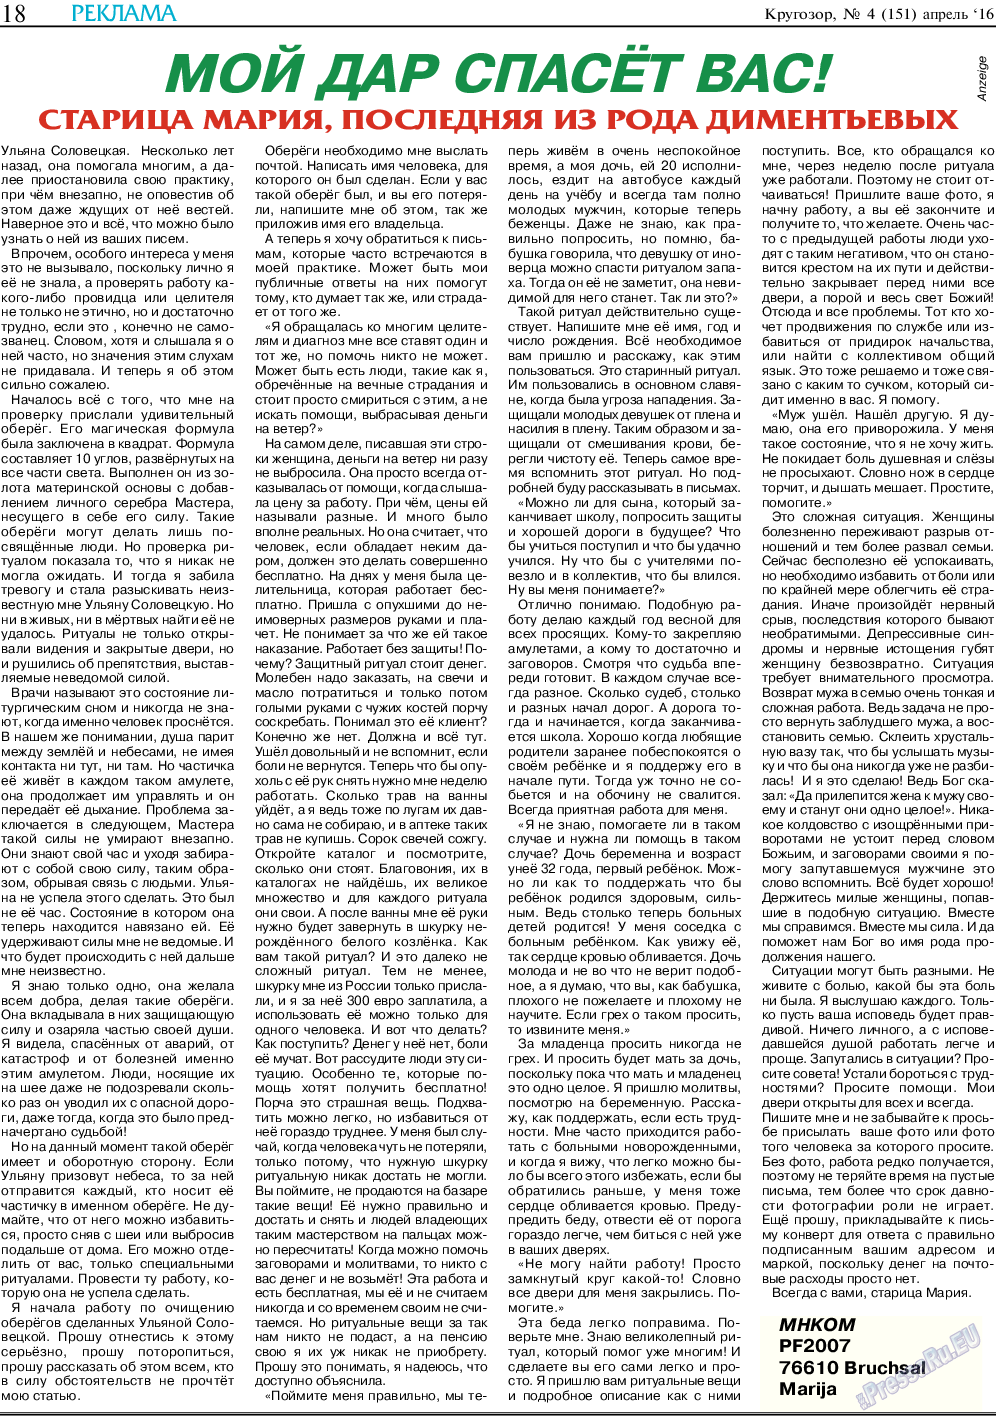 Кругозор, газета. 2016 №4 стр.18